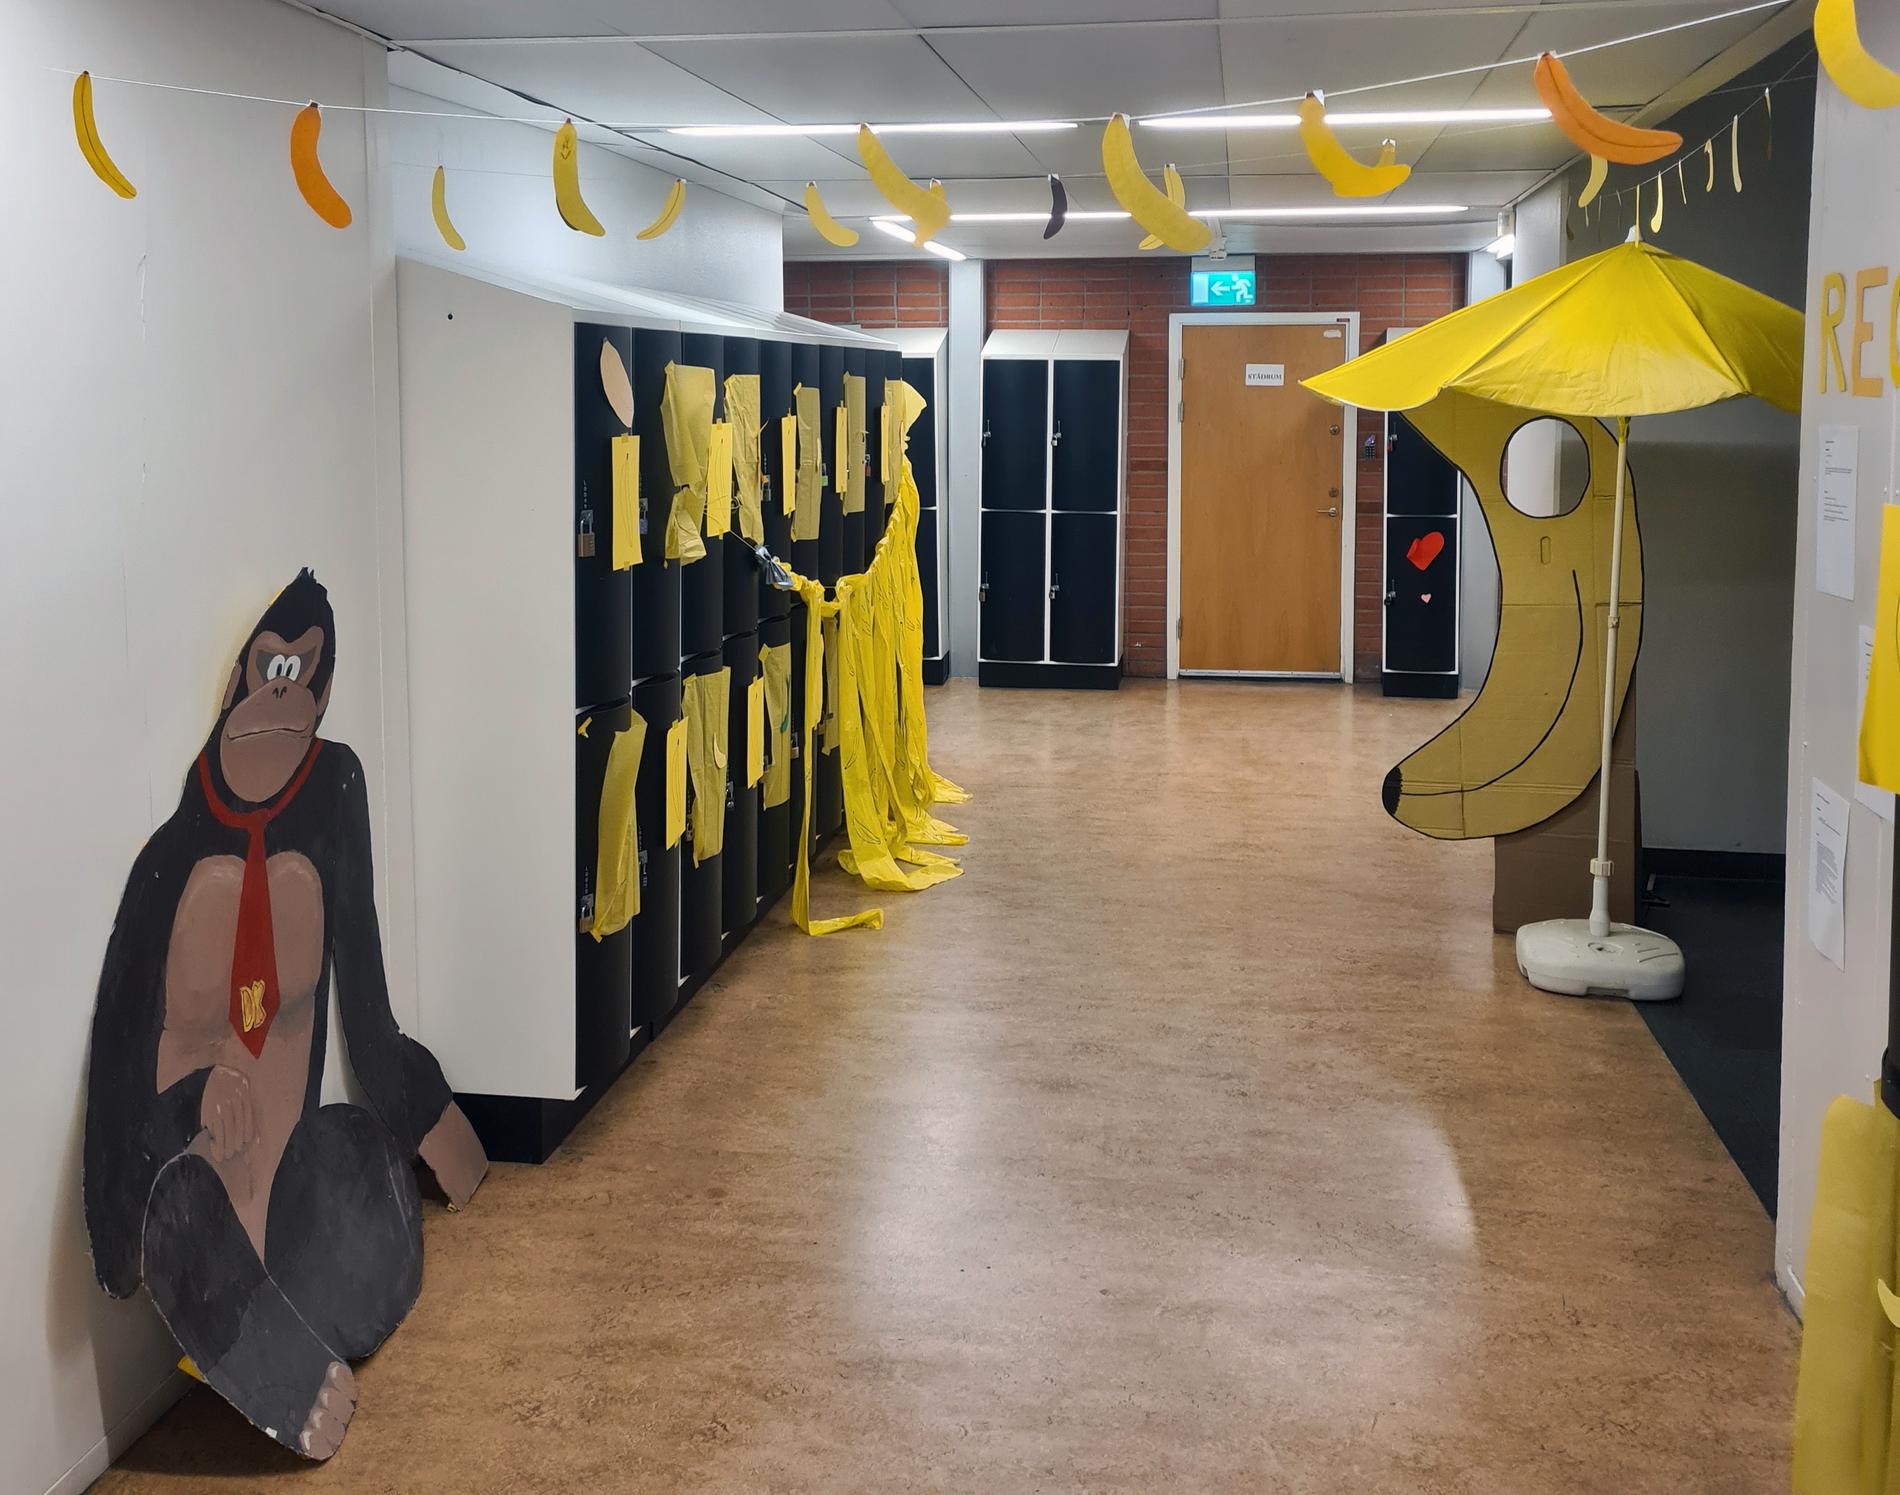 Lärare och elever har reagerat kraftigt på ”frukttemat” efter att en korridor dekorerats med apor och bananer.  